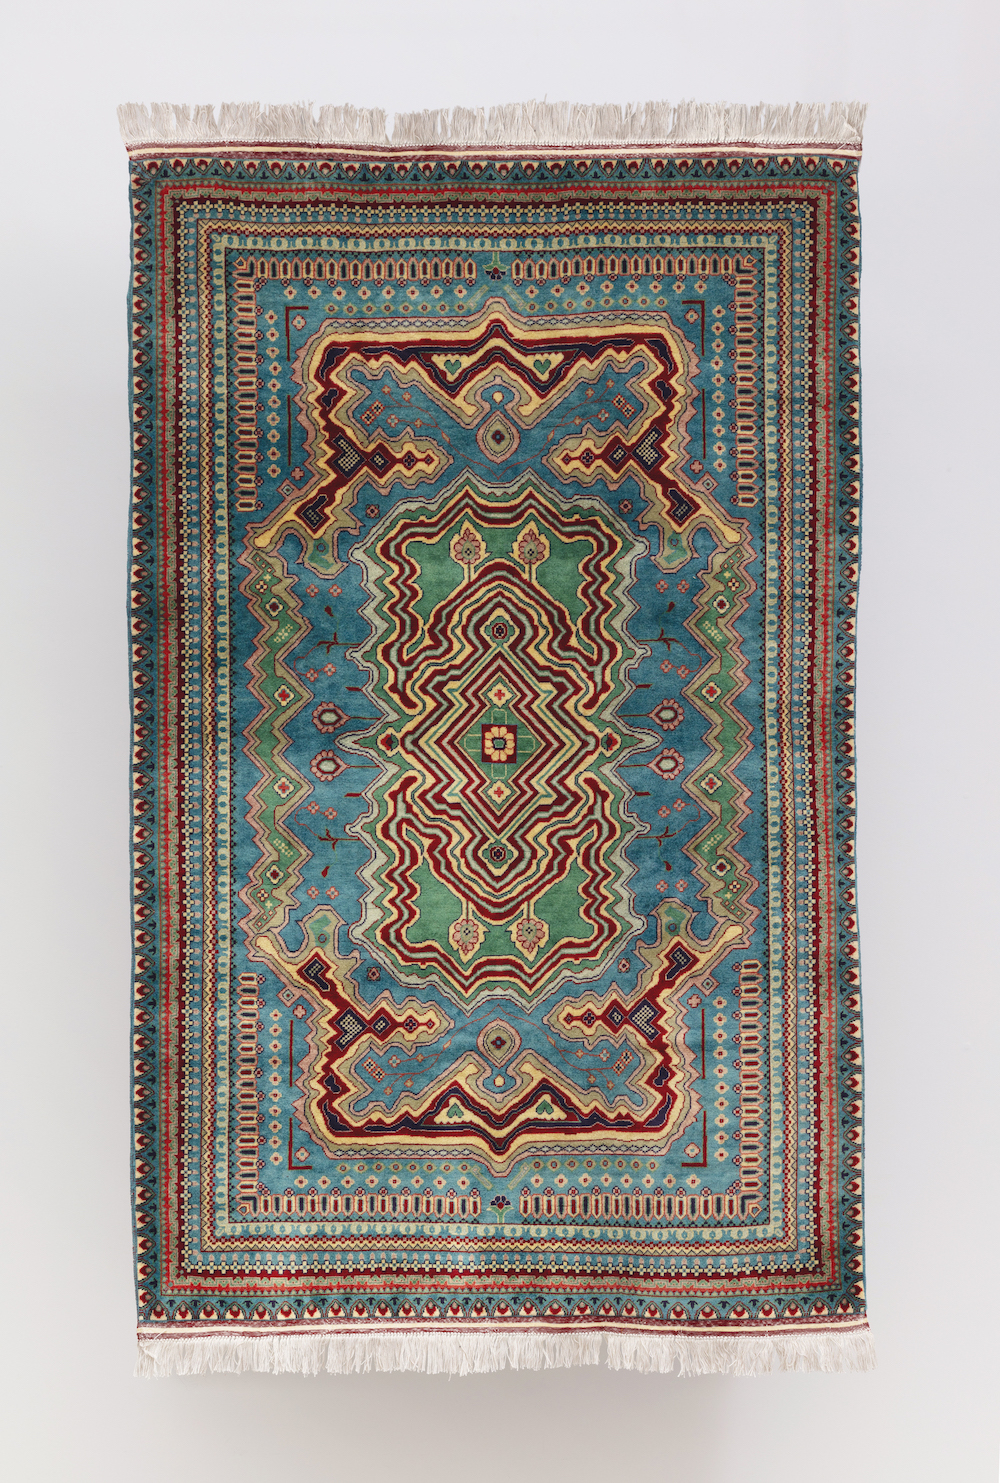 MBTC N1, 2021, Handwoven Wool Carpet, 76.5 x 49.5 in 